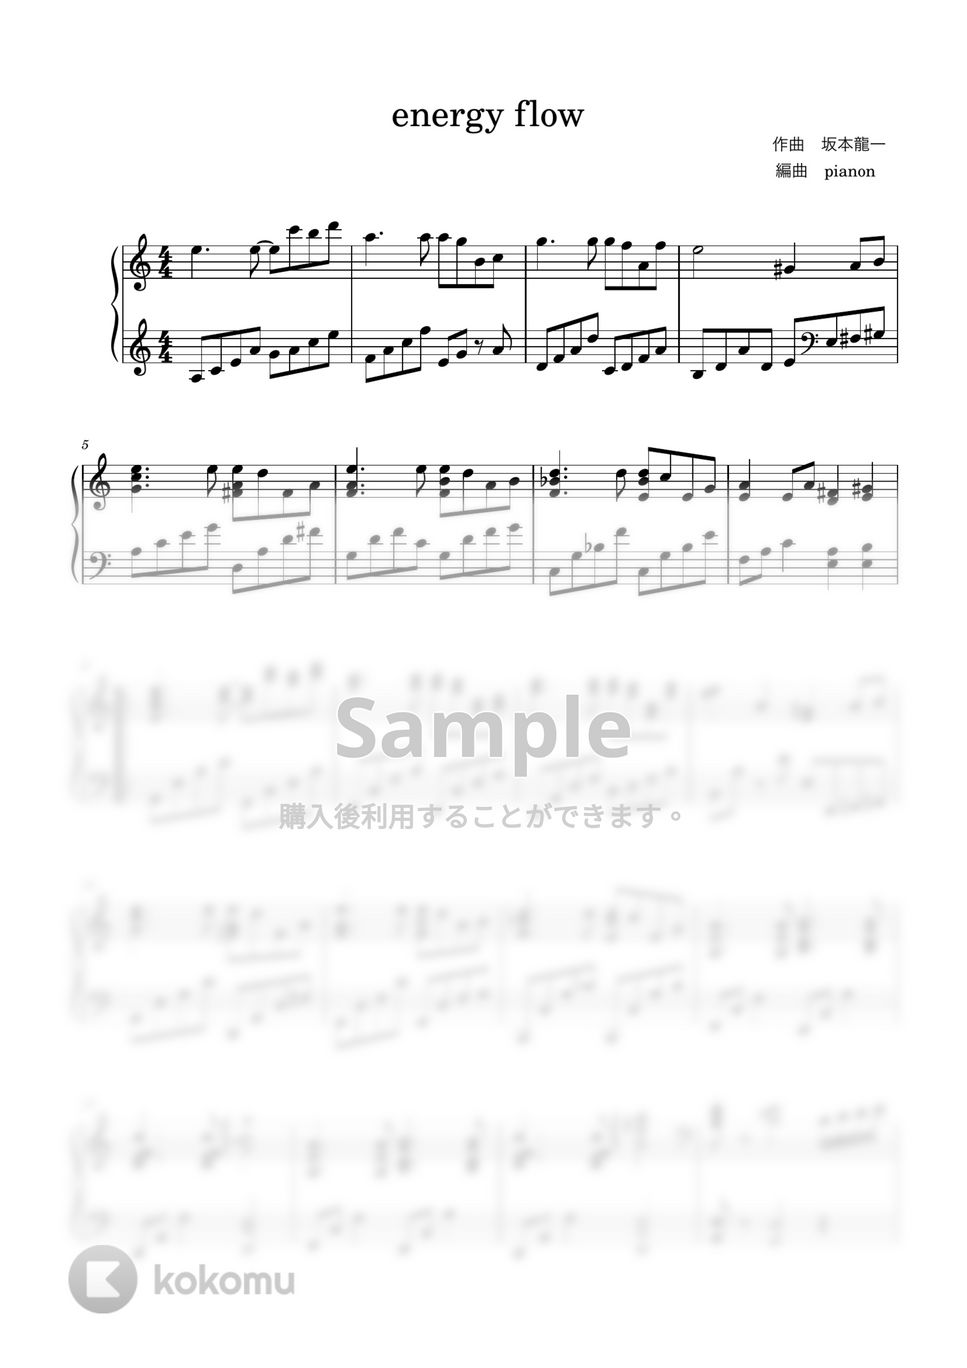 坂本龍一 - energy flow (ピアノソロ上級) by pianon楽譜